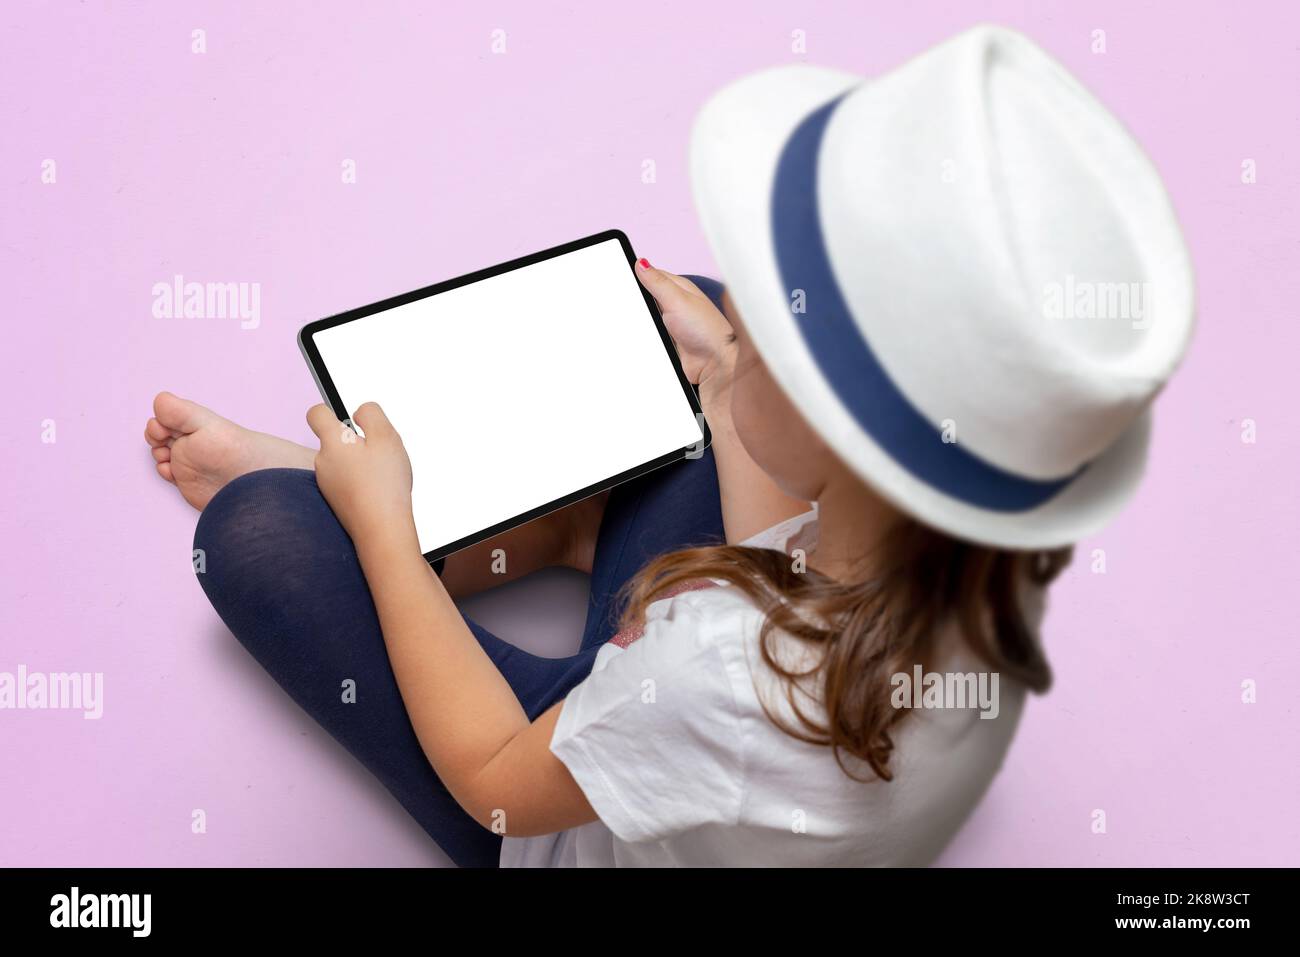 La niña con un sombrero blanco está sentada en un suelo rosa y sostiene una tableta con pantalla aislada. Maqueta de la tableta Foto de stock